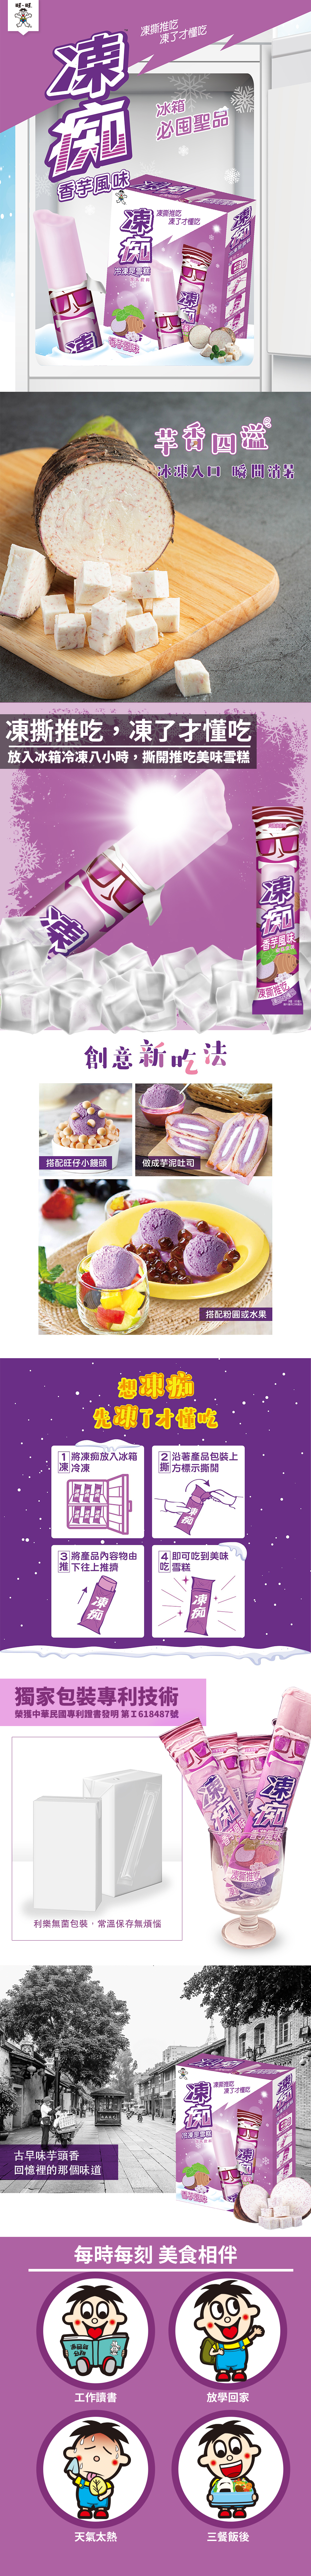 【旺旺】凍痴含乳飲料-香芋風味(4支/盒) 冷凍後是綿密雪糕